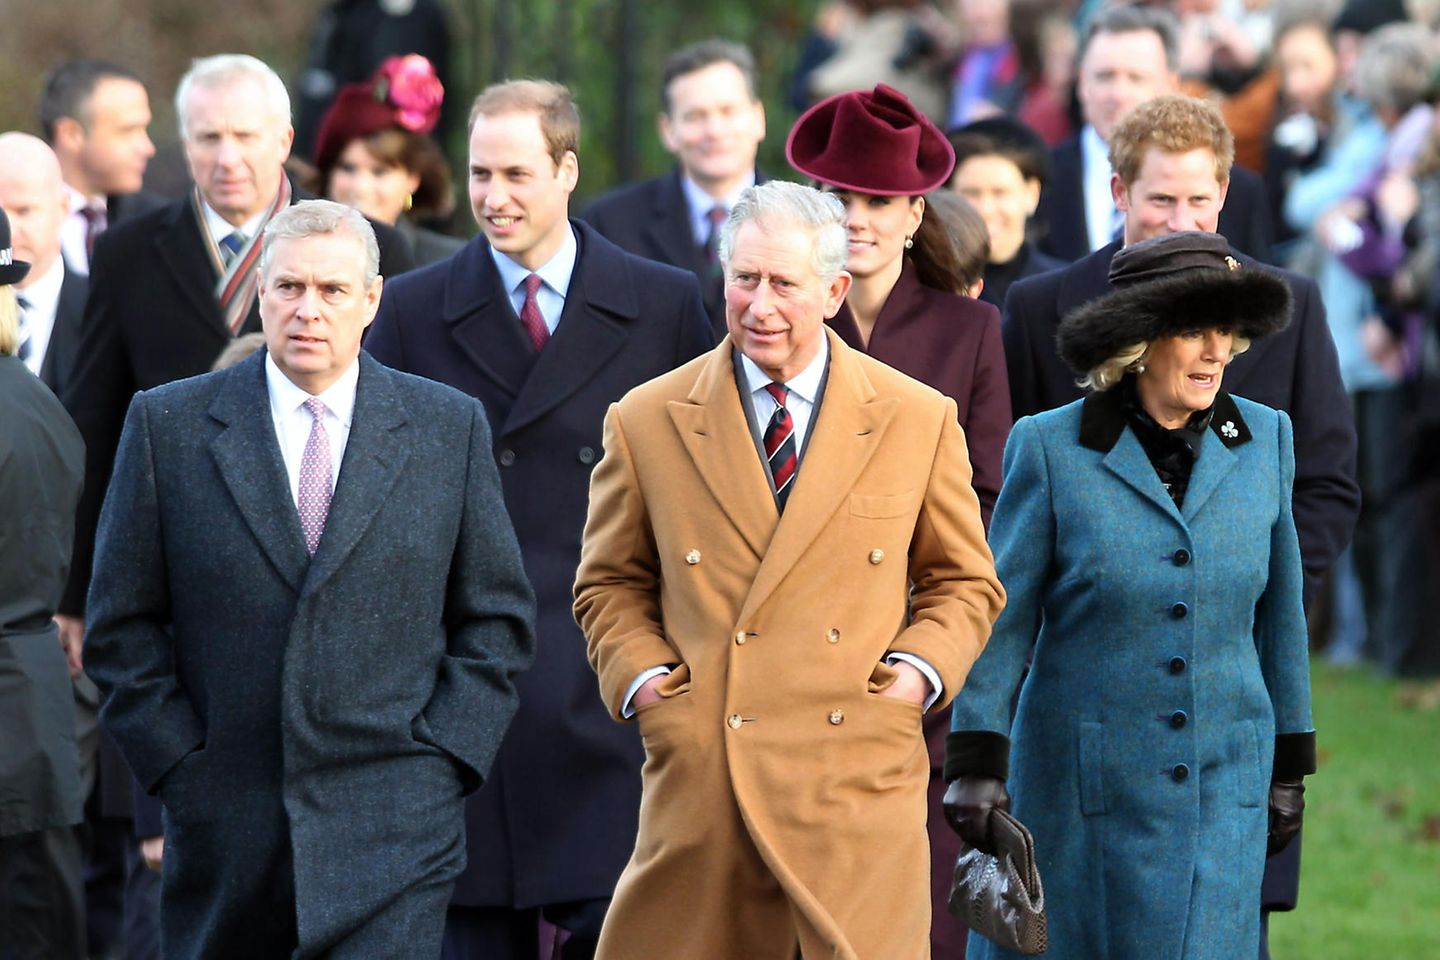 Weihnachten in Windsor sieht 2011 noch anders aus: Prinz Andrew, Prinz William, Prinz Charles, Herzogin Catherine, Herzogin Camilla und Prinz Harry laufen gemeinsam zum Weihnachtsgottesdienst in der Sandringham Church.